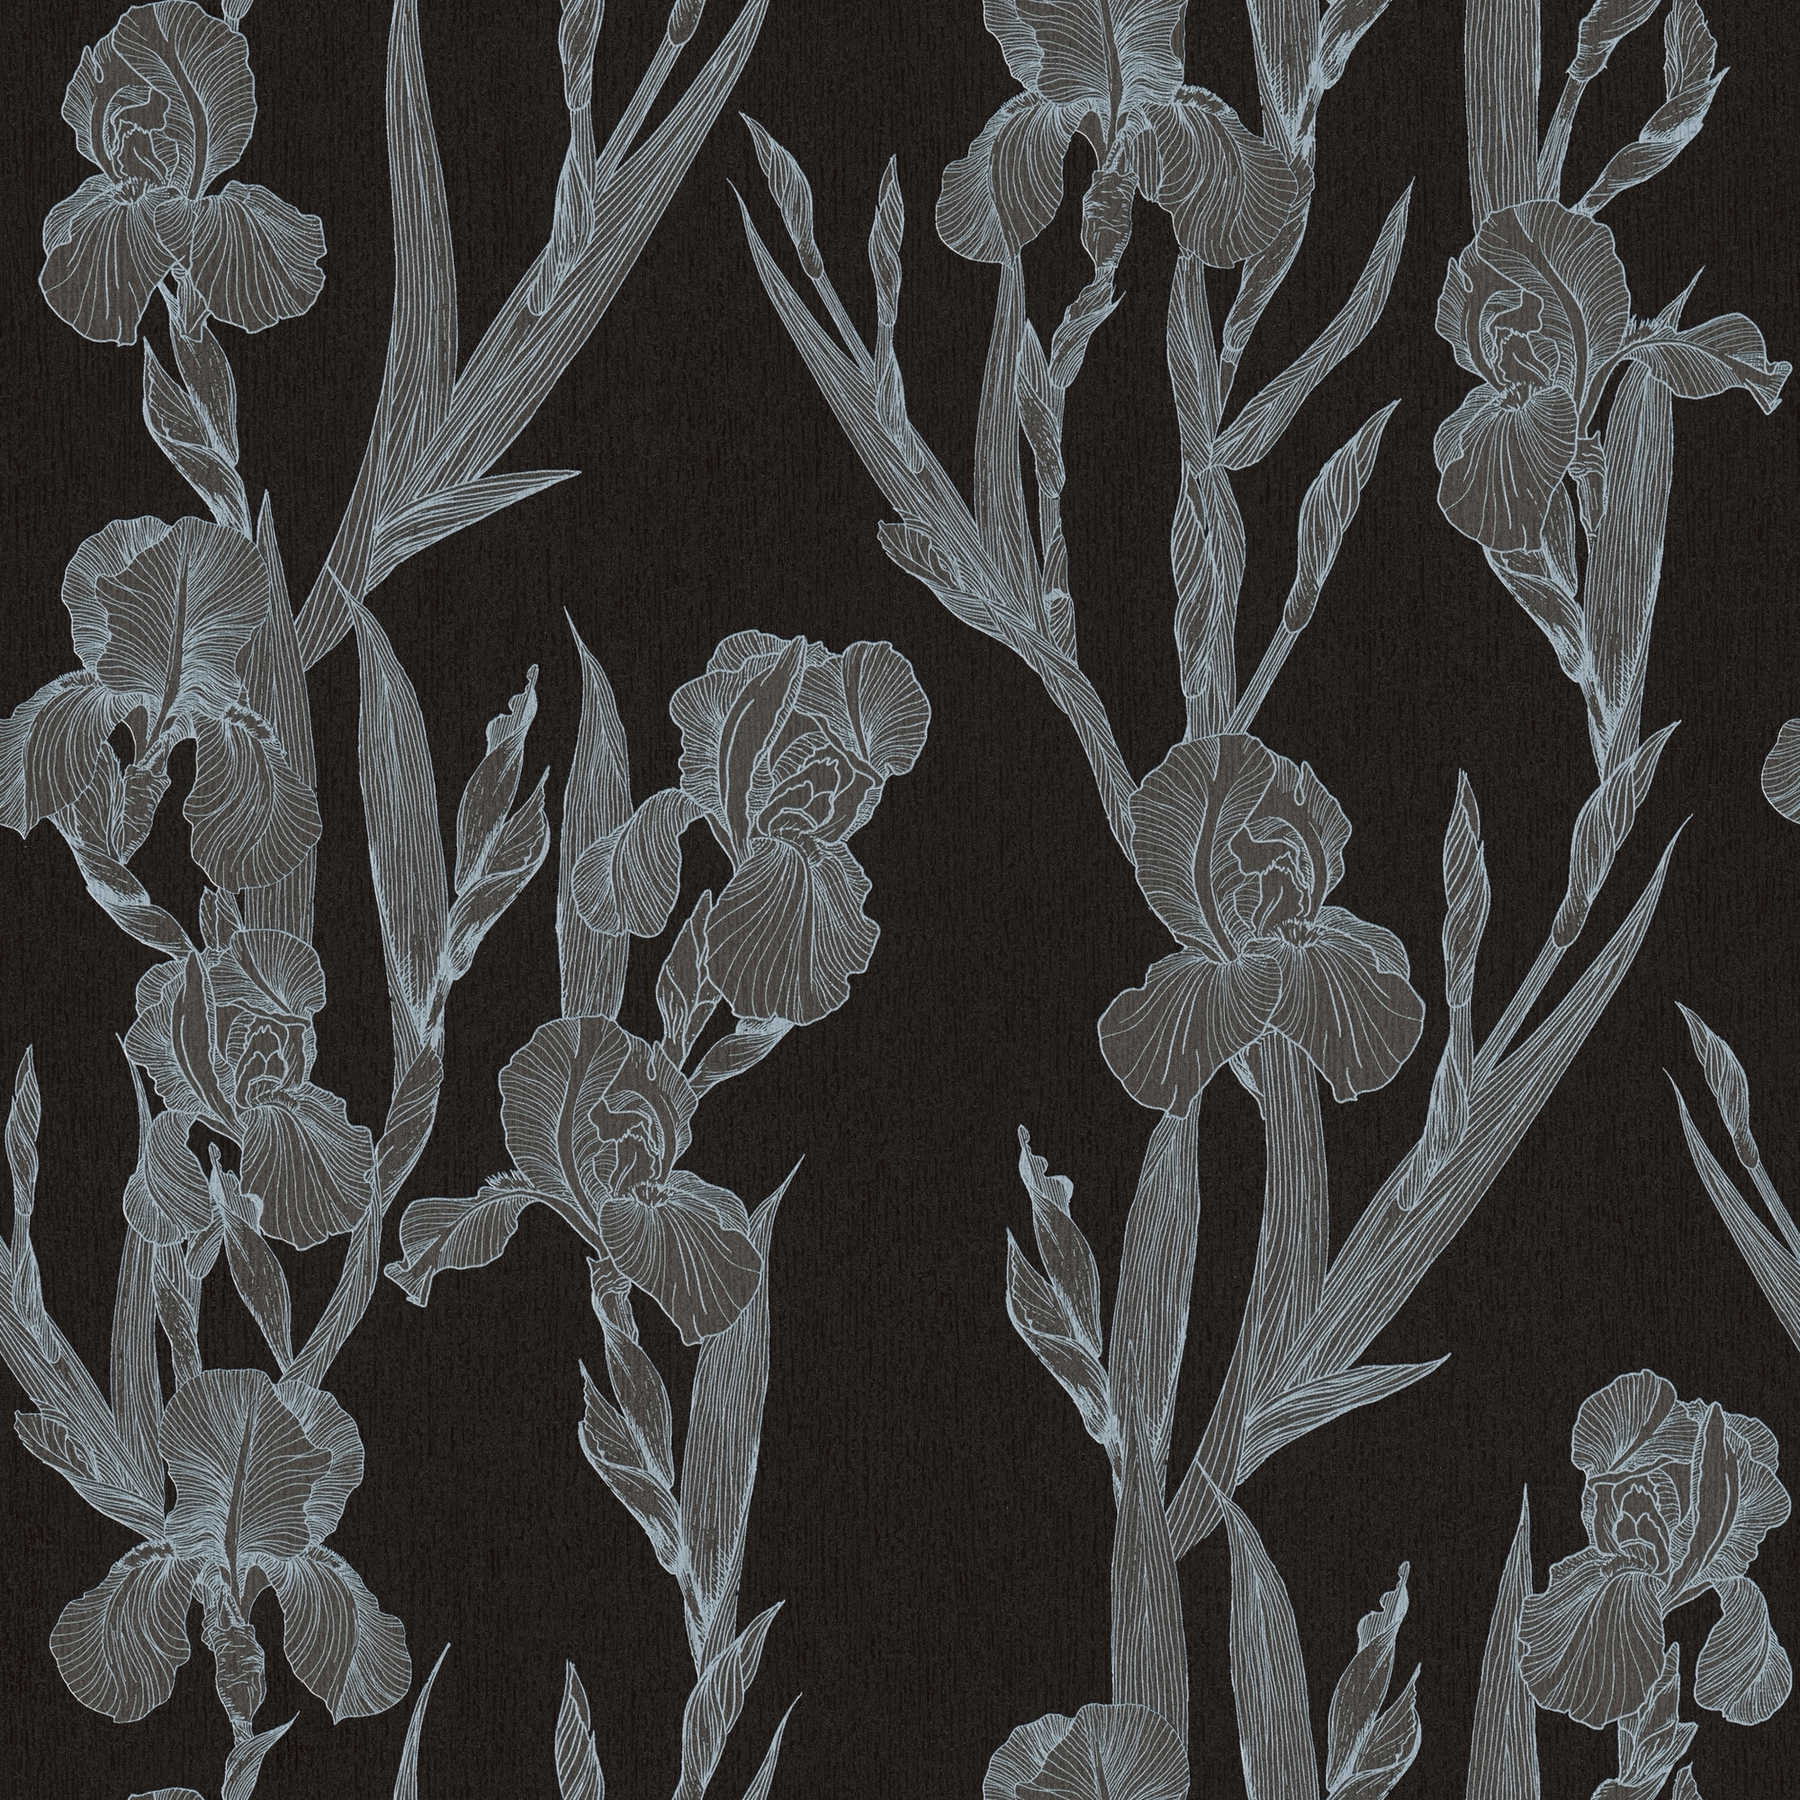 Papier peint fleuri moderne stylisé, rinceaux de fleurs - noir, gris, blanc
